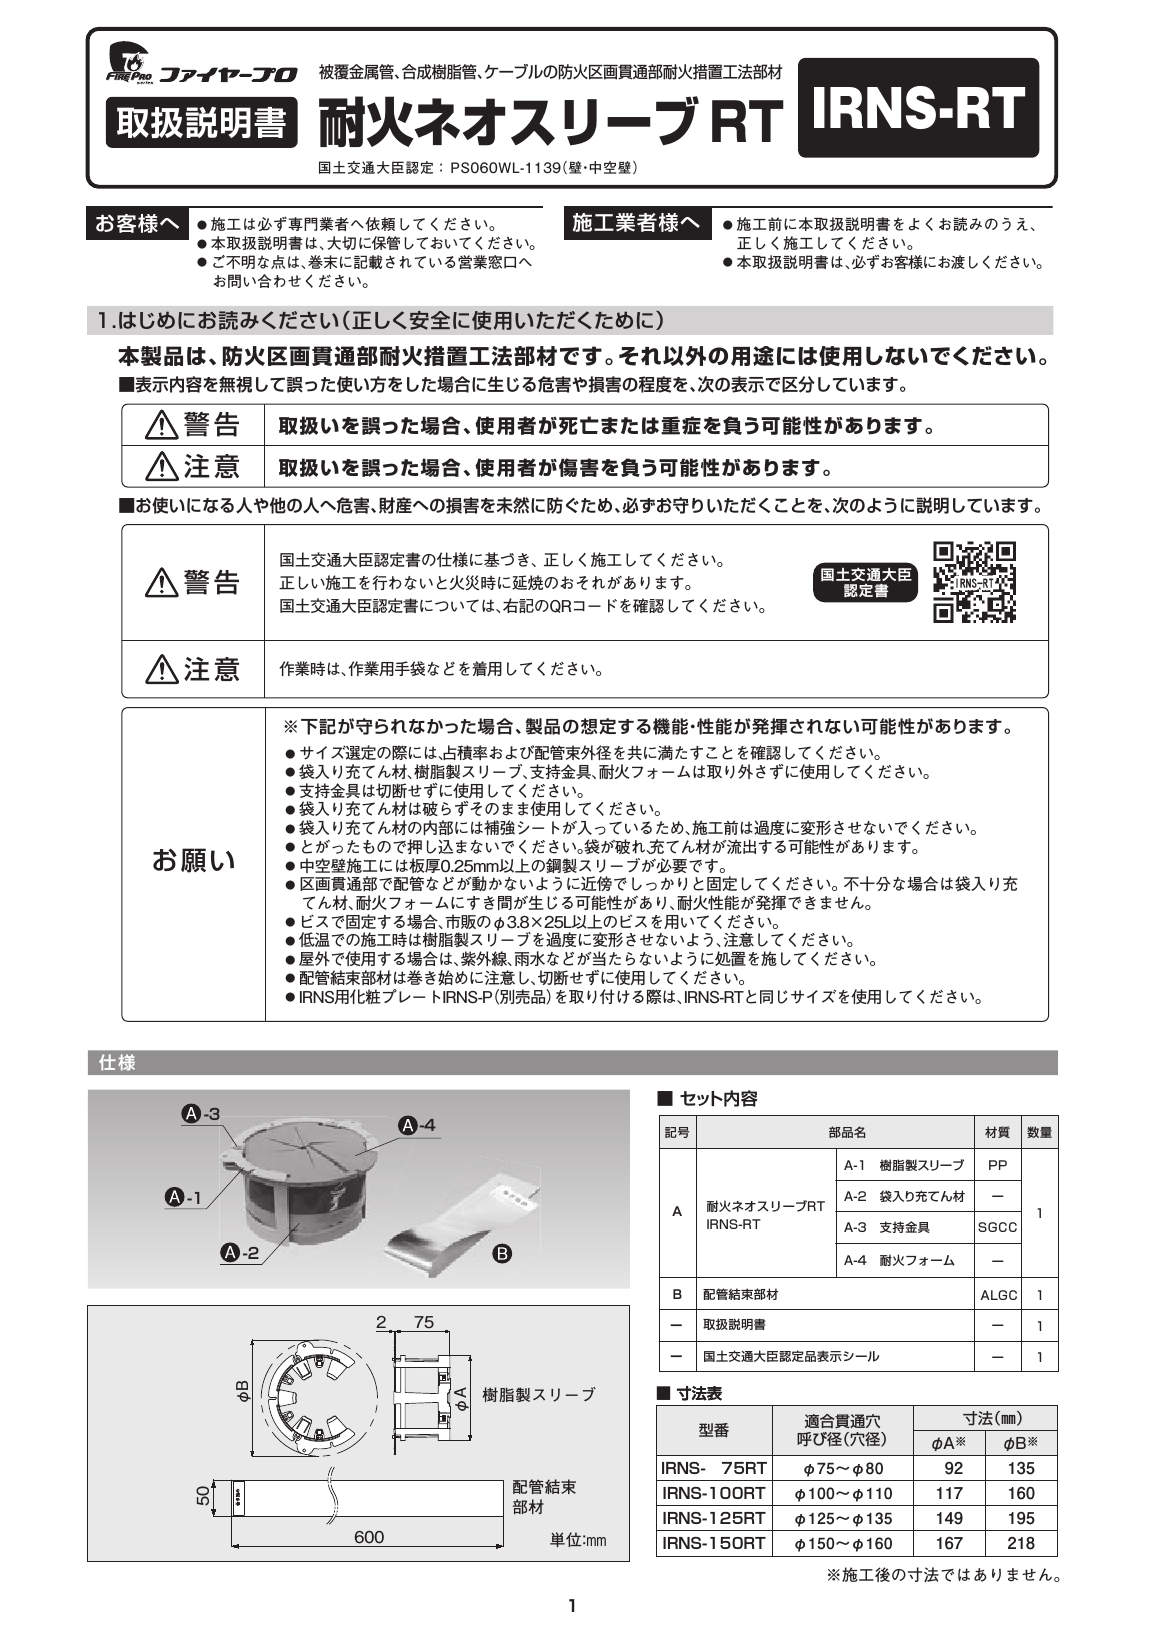 IRNS-RT_取扱説明書_20201113-01w.pdf